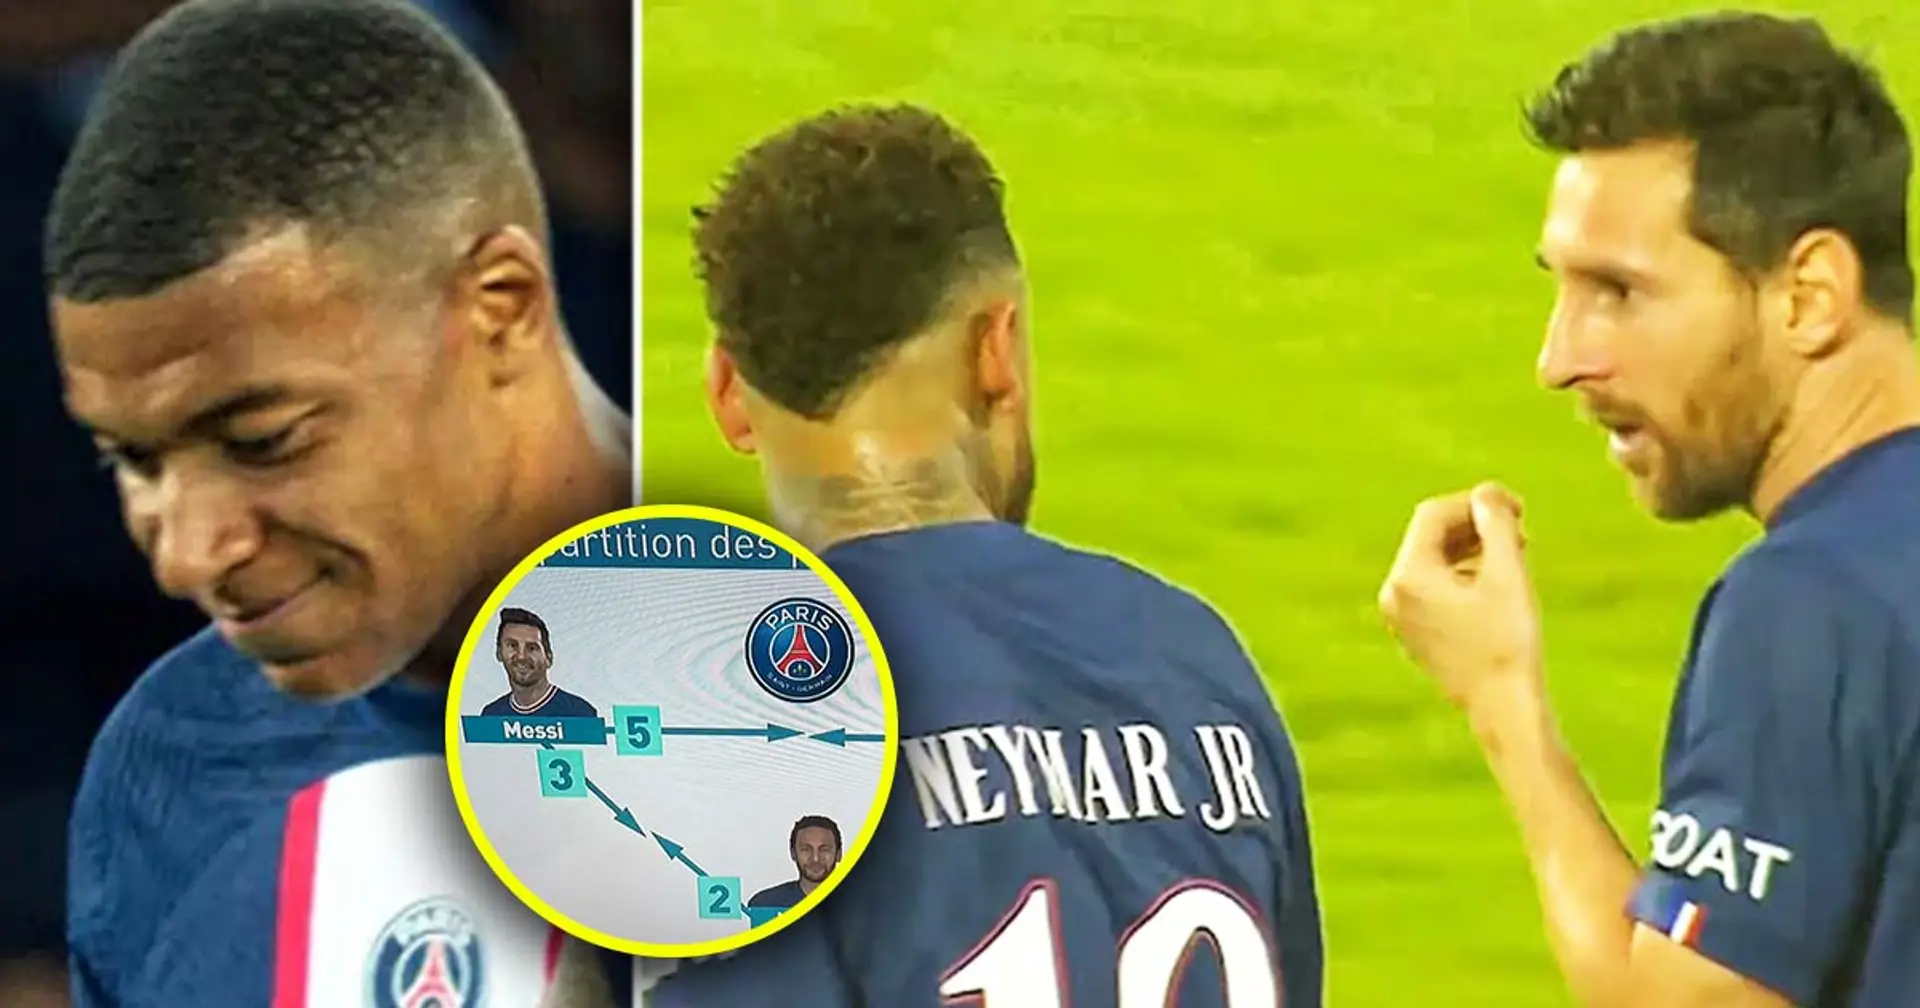 Eine Statistik zeigt die totale Trennung zwischen Mbappe und dem Messi-Neymar-Duo bei PSG